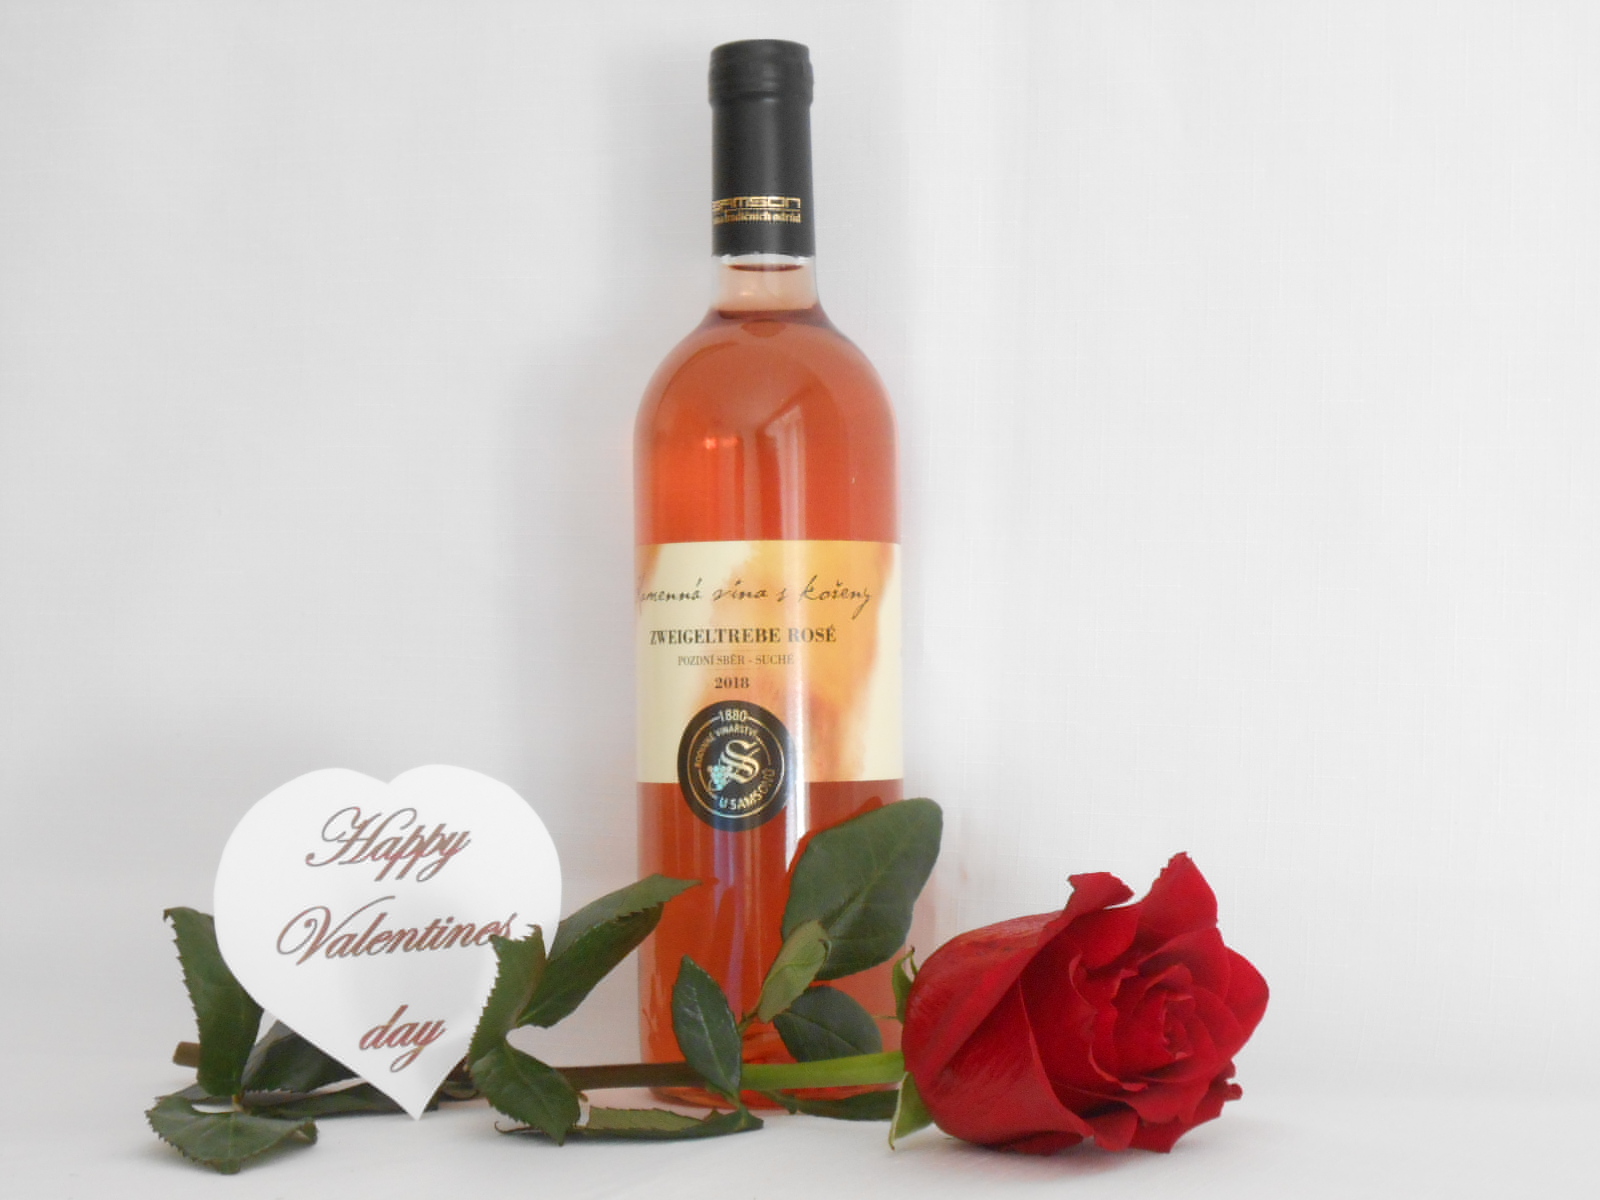 Růžová sluší Svatému Valentýnu, slavnostní gastronomii a dobrému vínu.